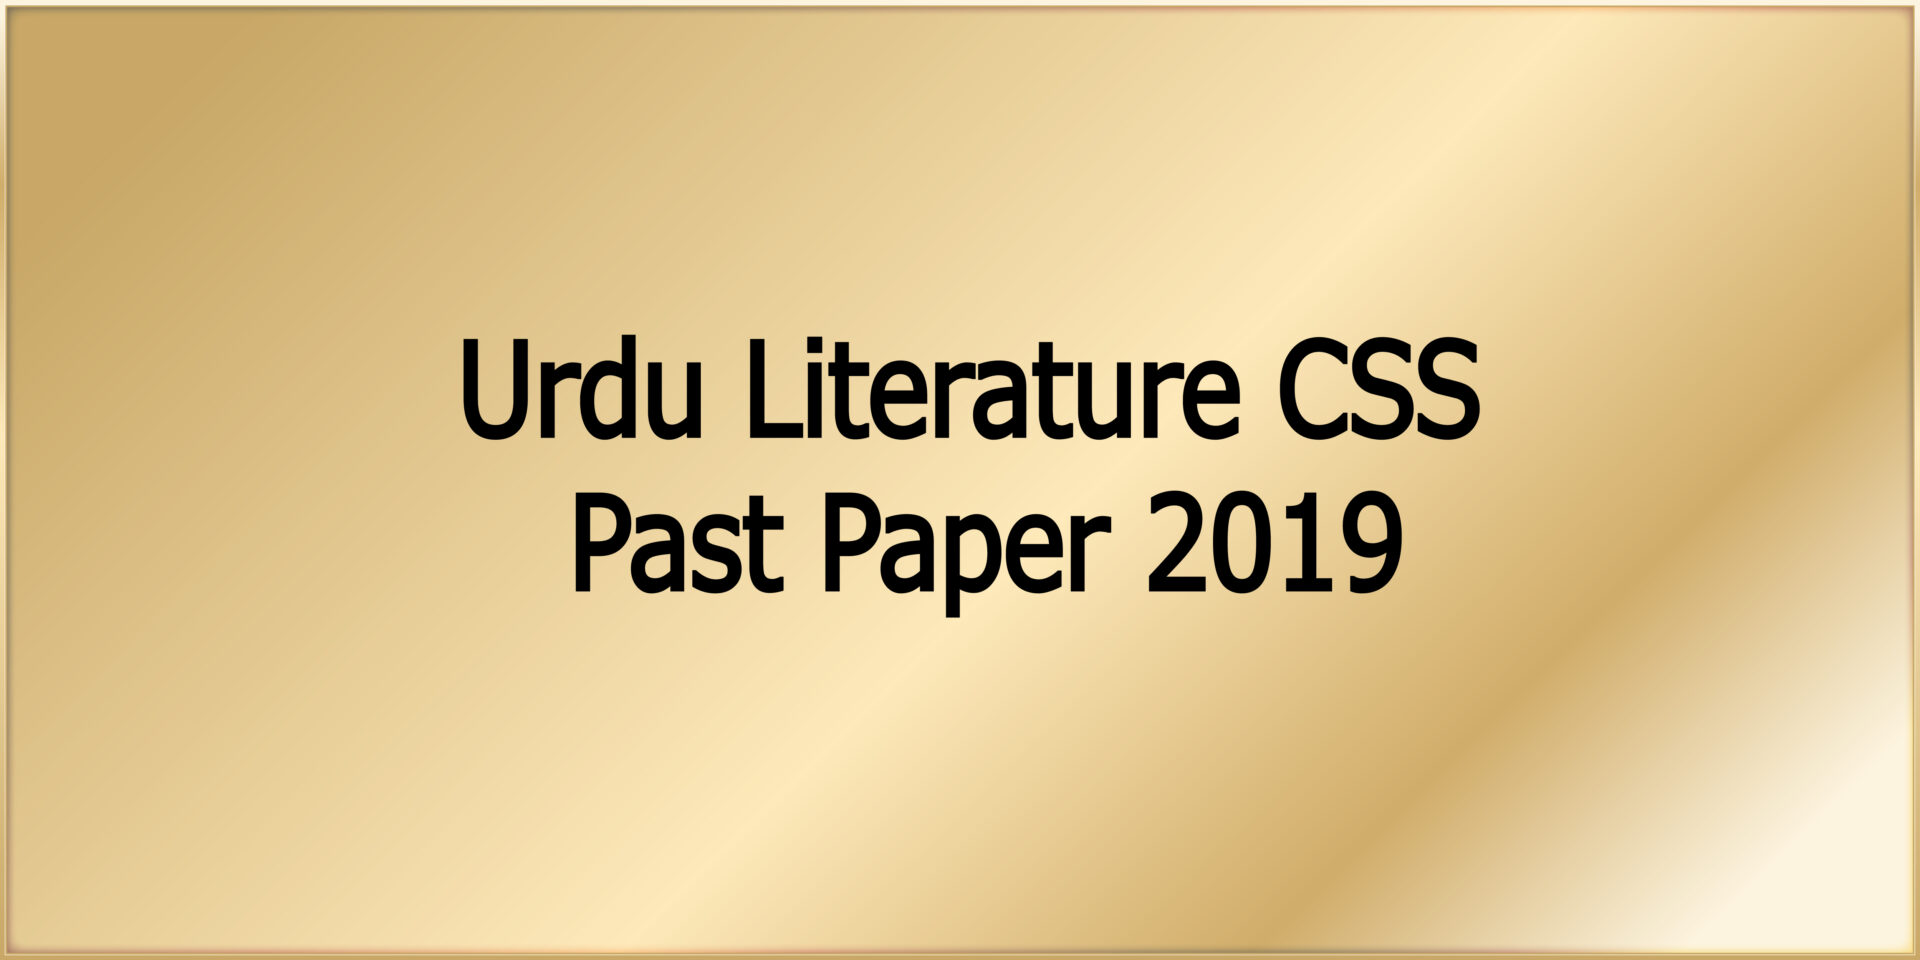 Urdu Literature CSS Past Paper 2019